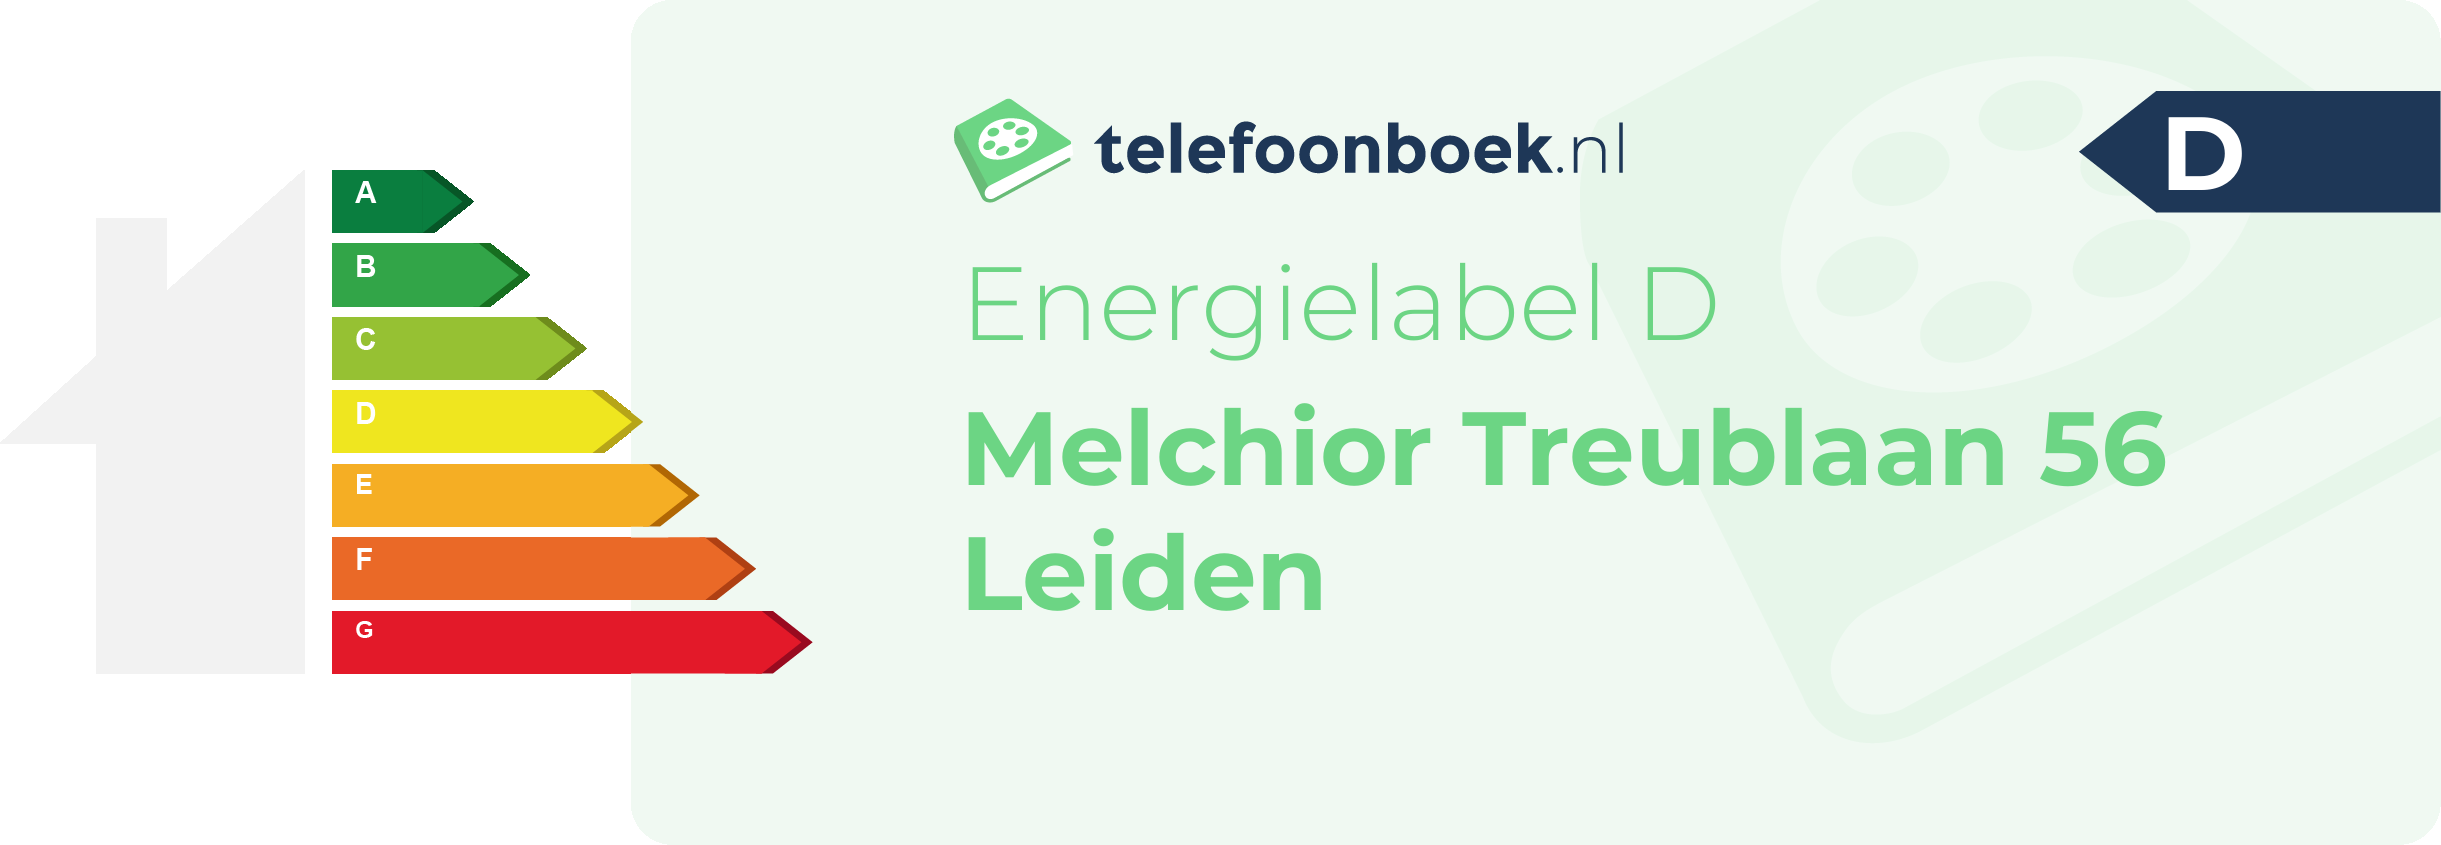 Energielabel Melchior Treublaan 56 Leiden